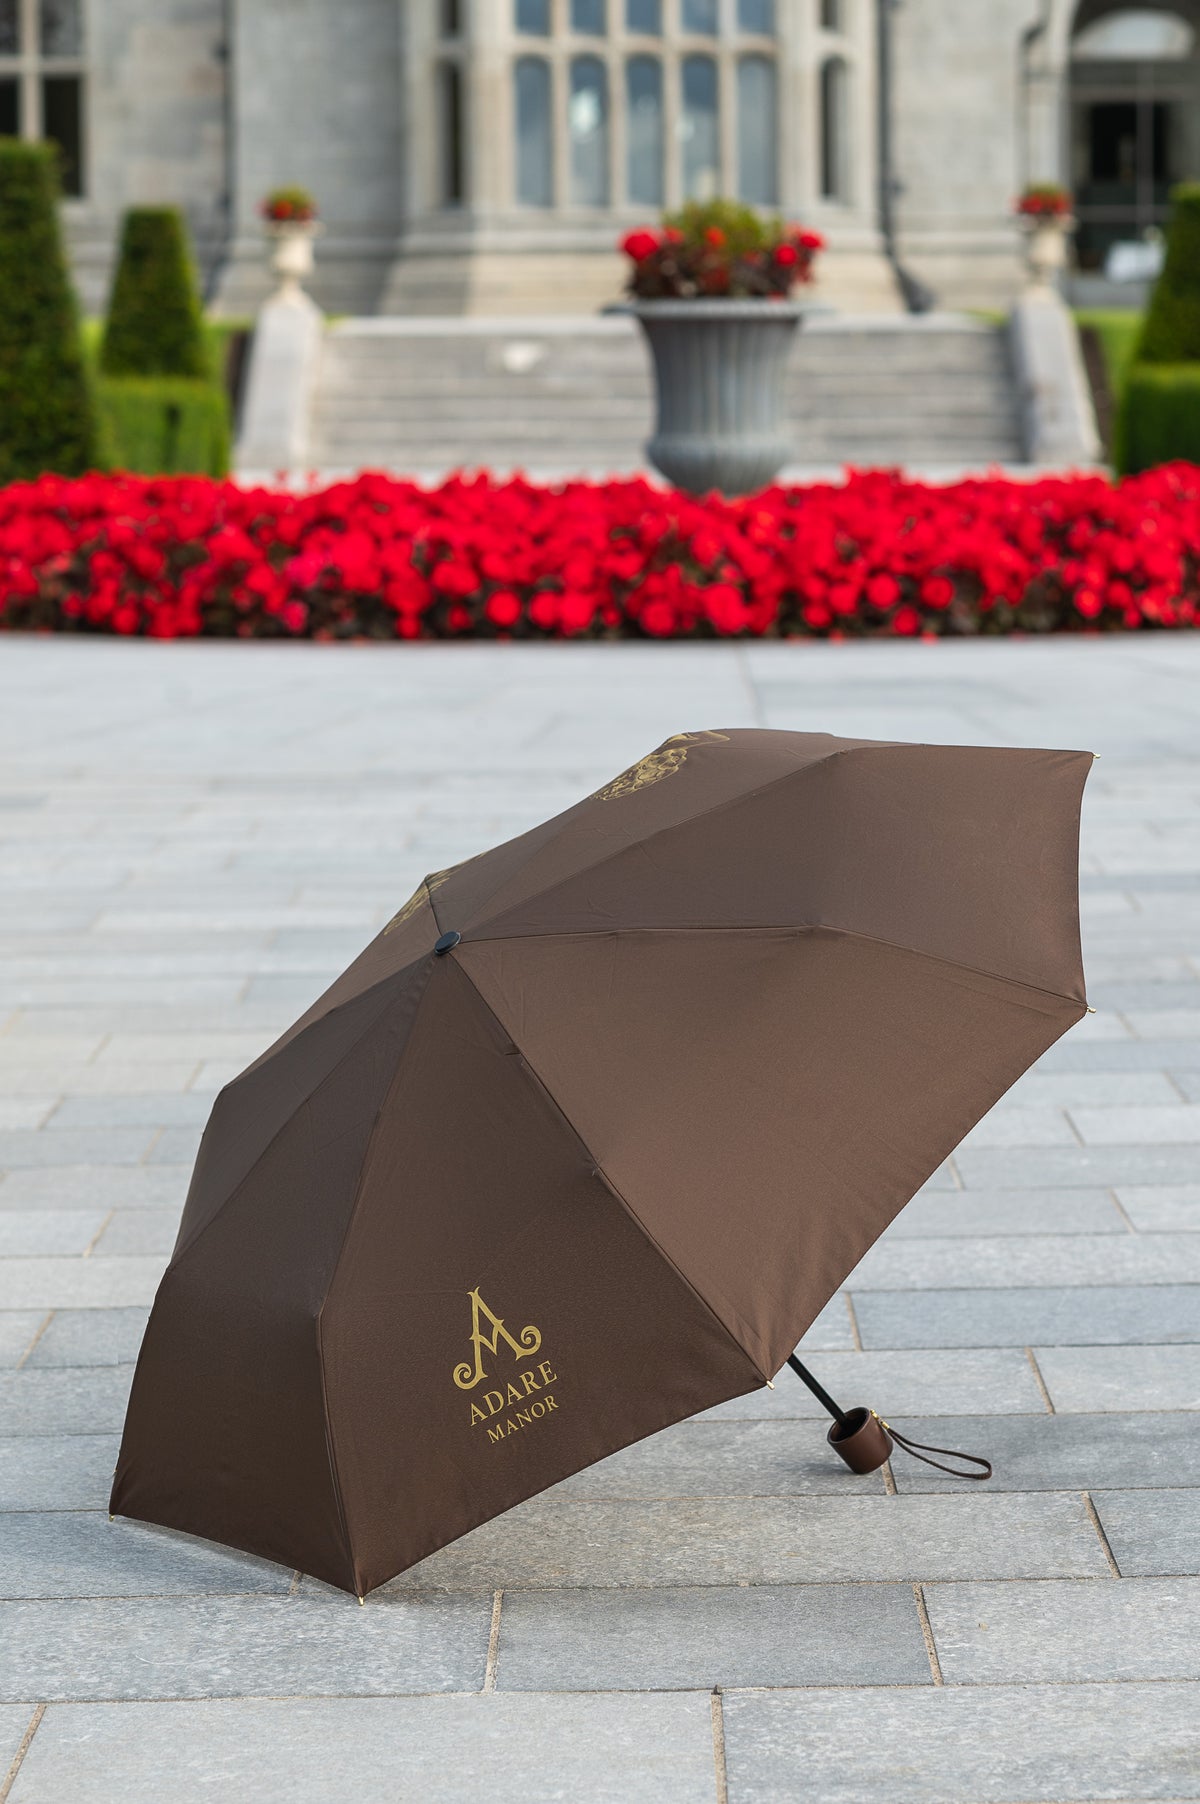 Adare Manor Compact Umbrella